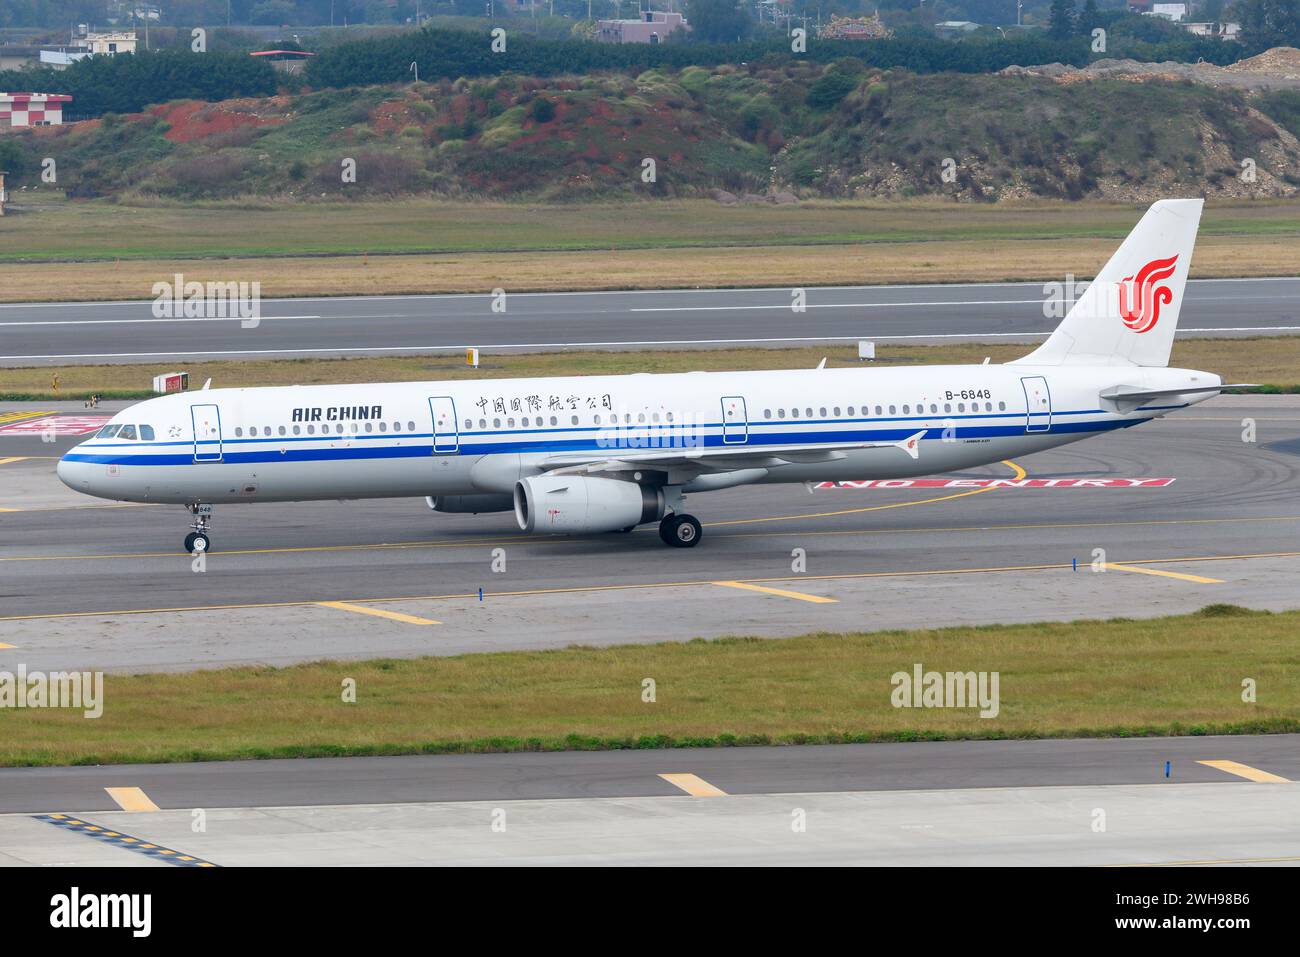 Air China Airbus A321 im Rollverkehr. Flugzeug A321 der chinesischen Fluggesellschaft Air China. Flugzeug von AirChina registriert als B-6848. Stockfoto